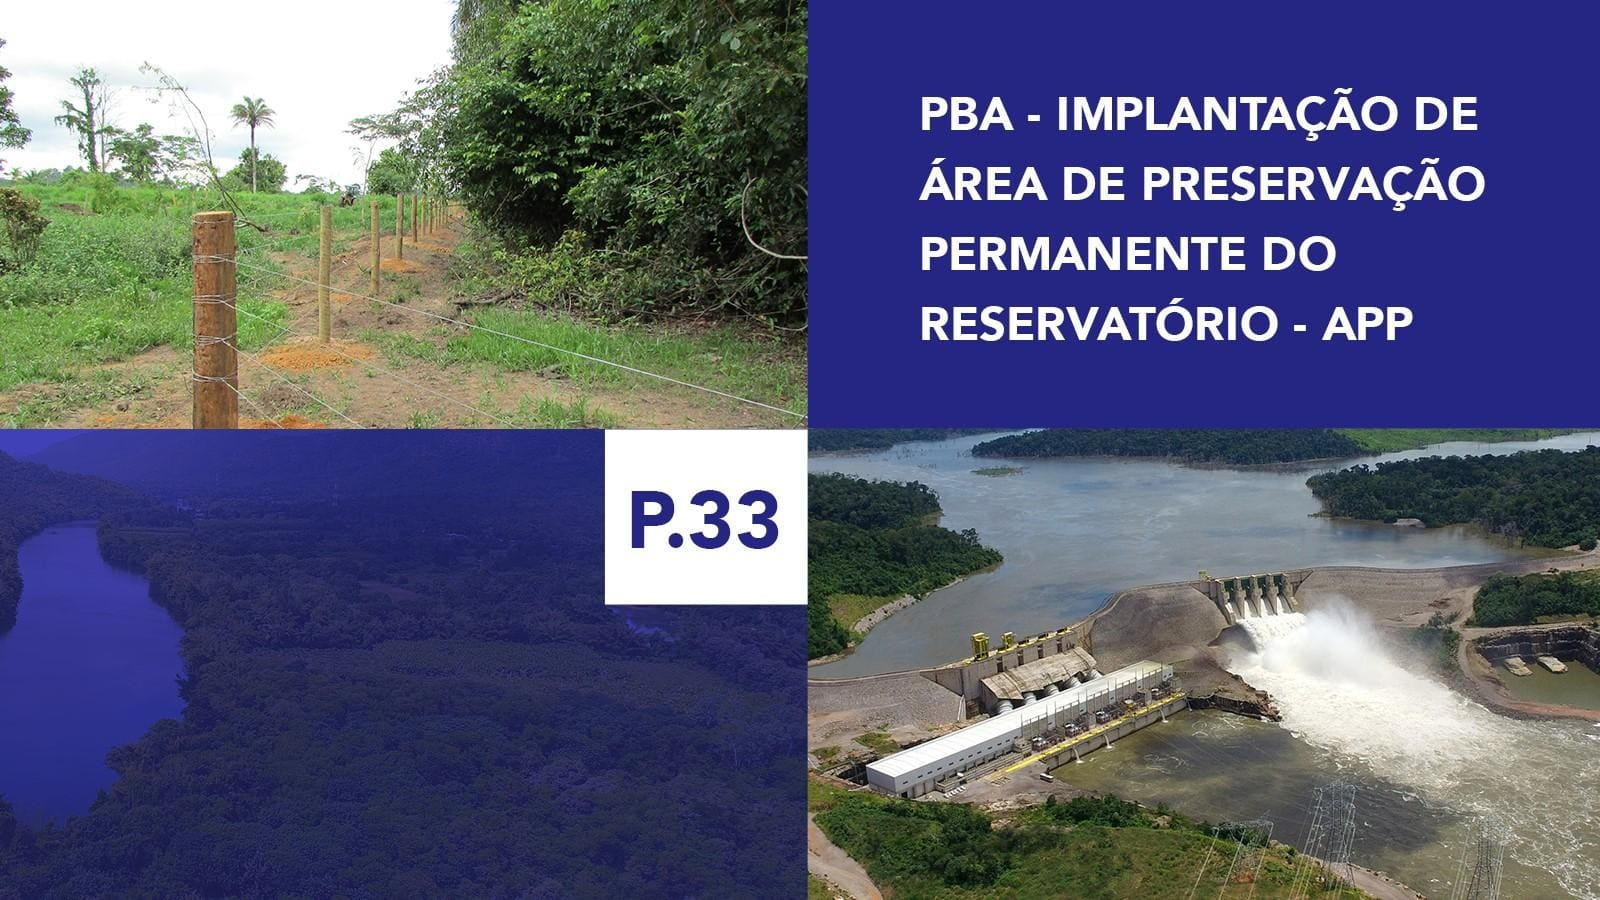 P.33 - Implantação de Área de Preservação Permanente do Reservatório - APP